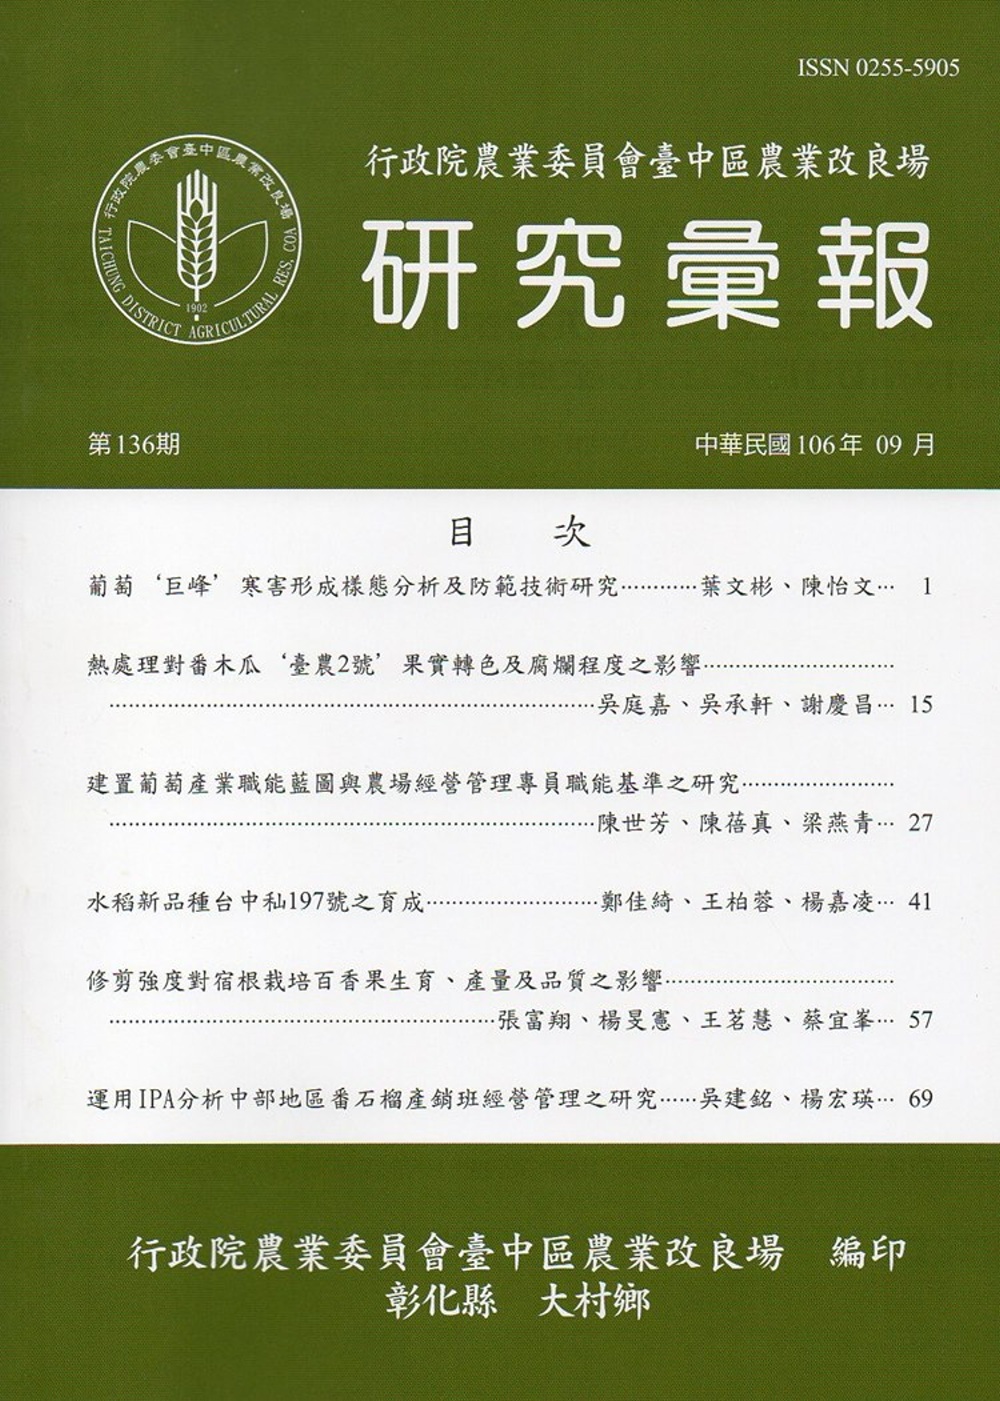 研究彙報136期(106/09)-行政院農業委員會臺中區農業改良場